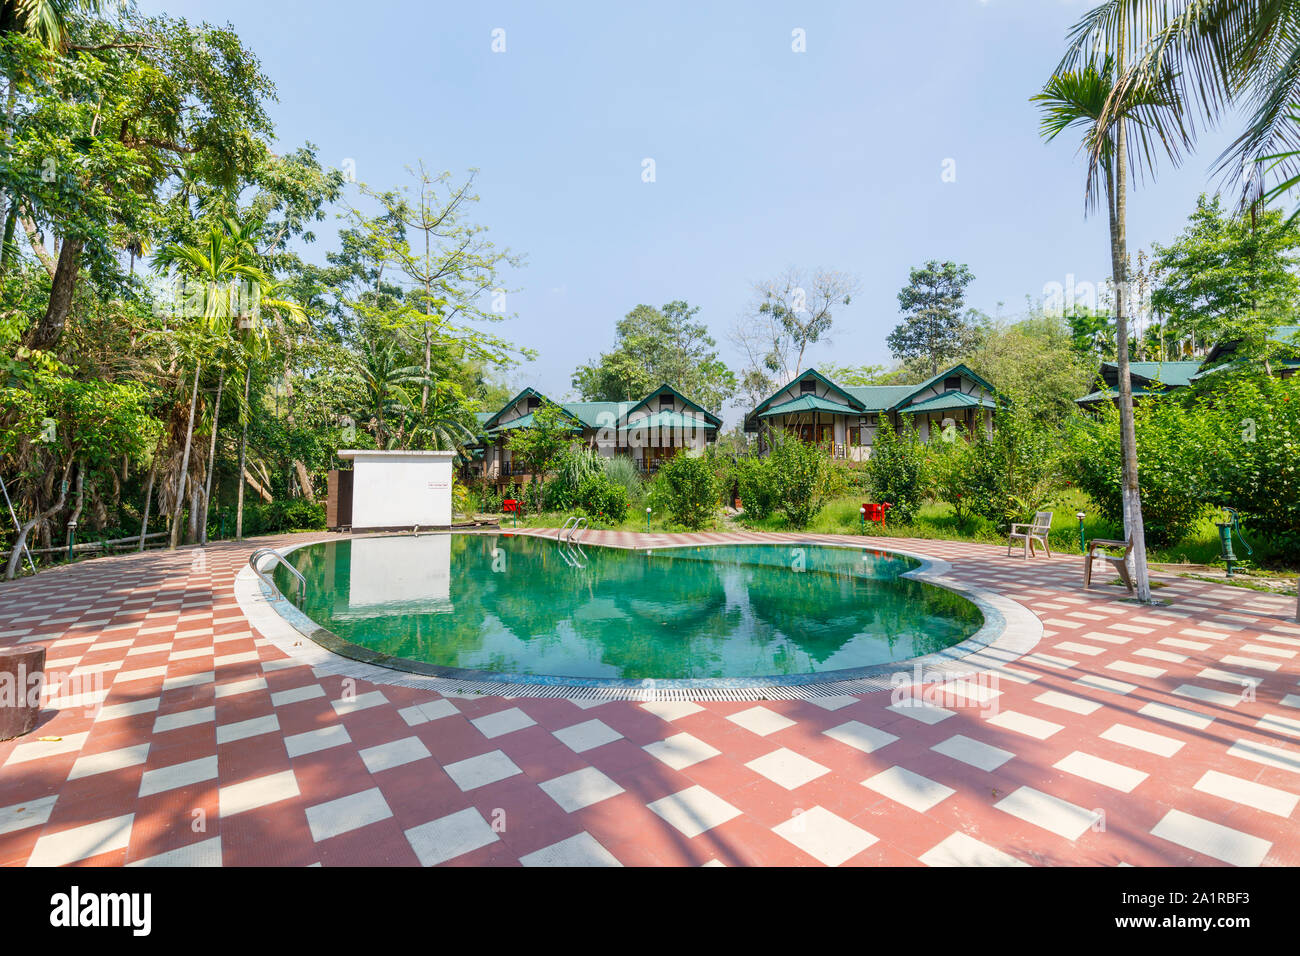 Piscine extérieure bordée de palmiers dans un jardin tropical luxuriant parc de l'infini, hôtel de villégiature, Kaziranga Golaghat District, Bochagaon, Assam, Inde Banque D'Images